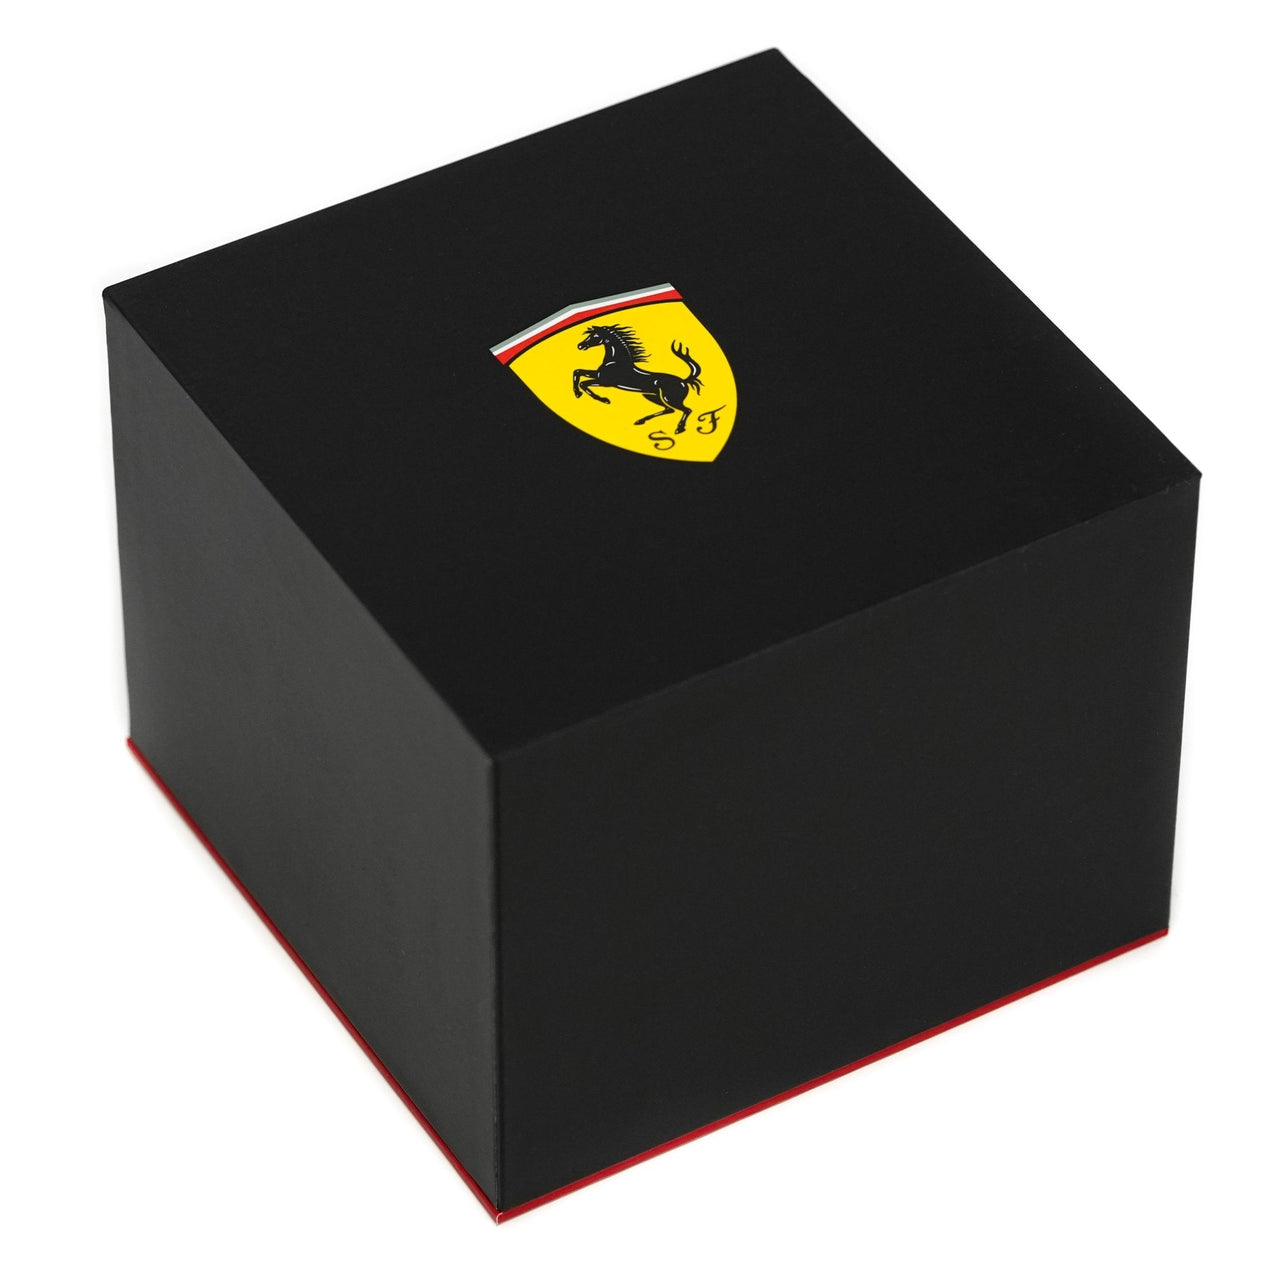 Scuderia Ferrari Watch Ultraleggero Black FE-083-0563 - Watches & Crystals